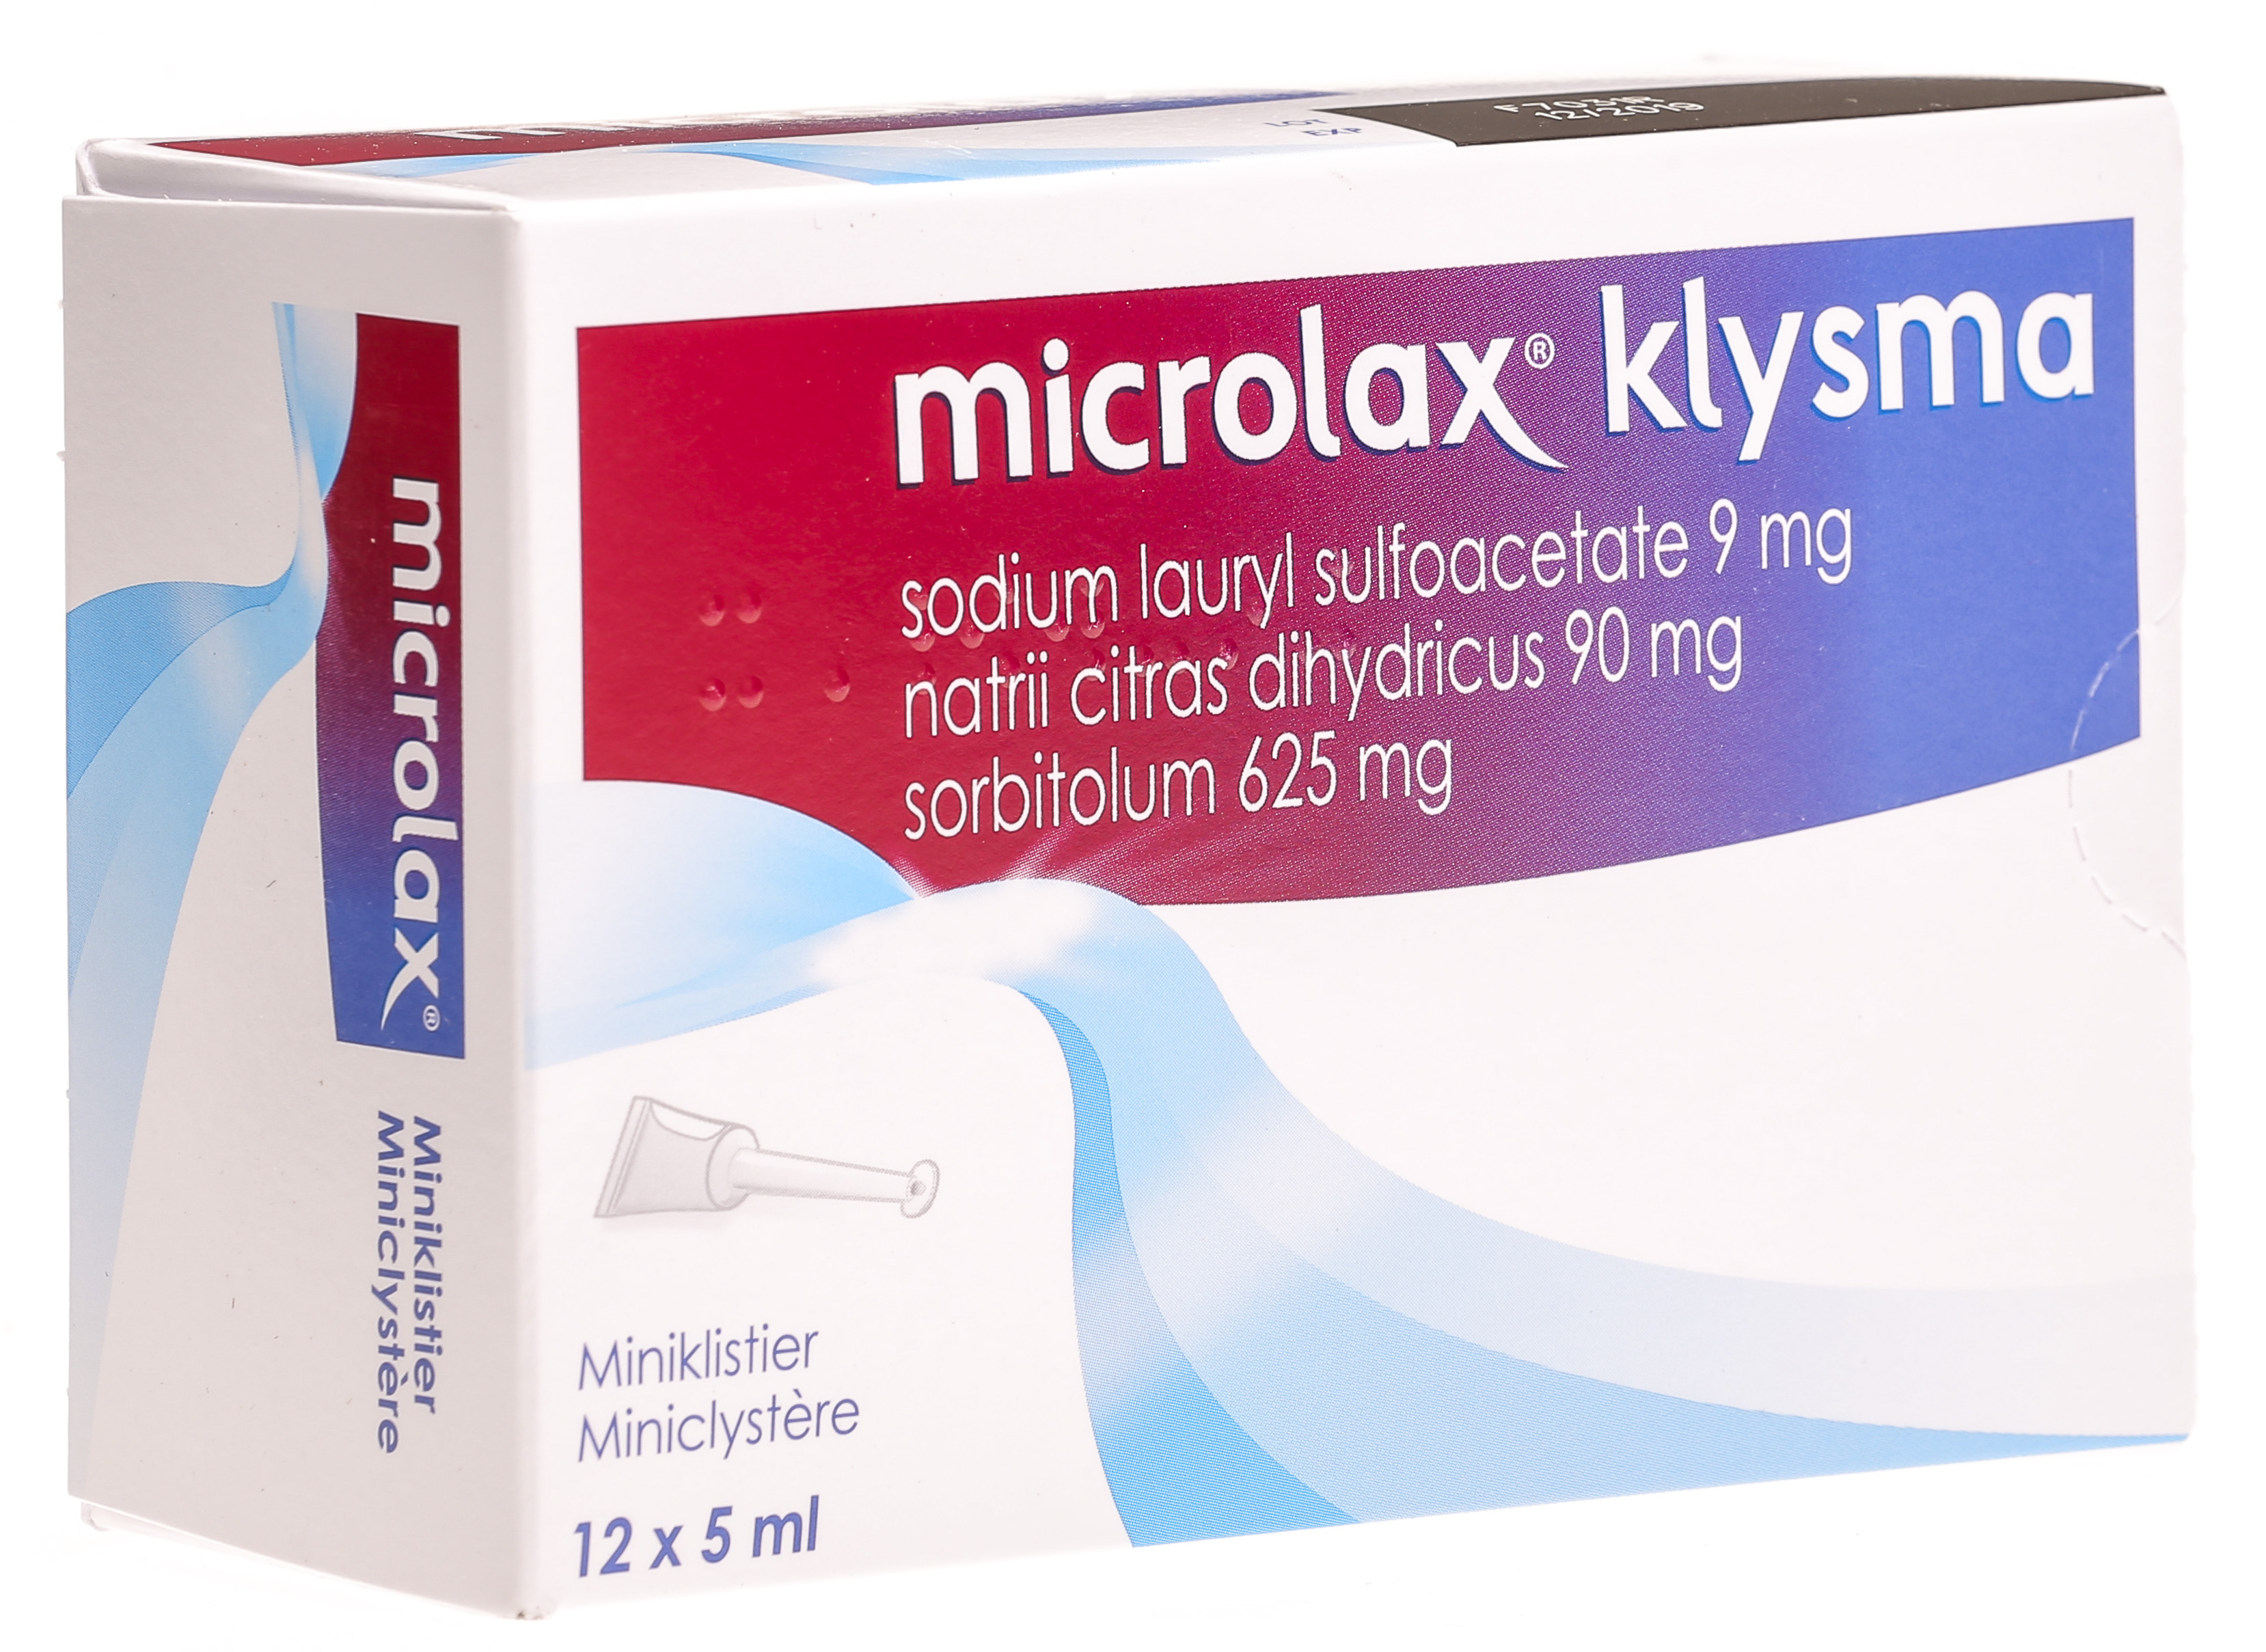 MICROLAX solution rectale boîte de 12 - Pharma-Médicaments.com